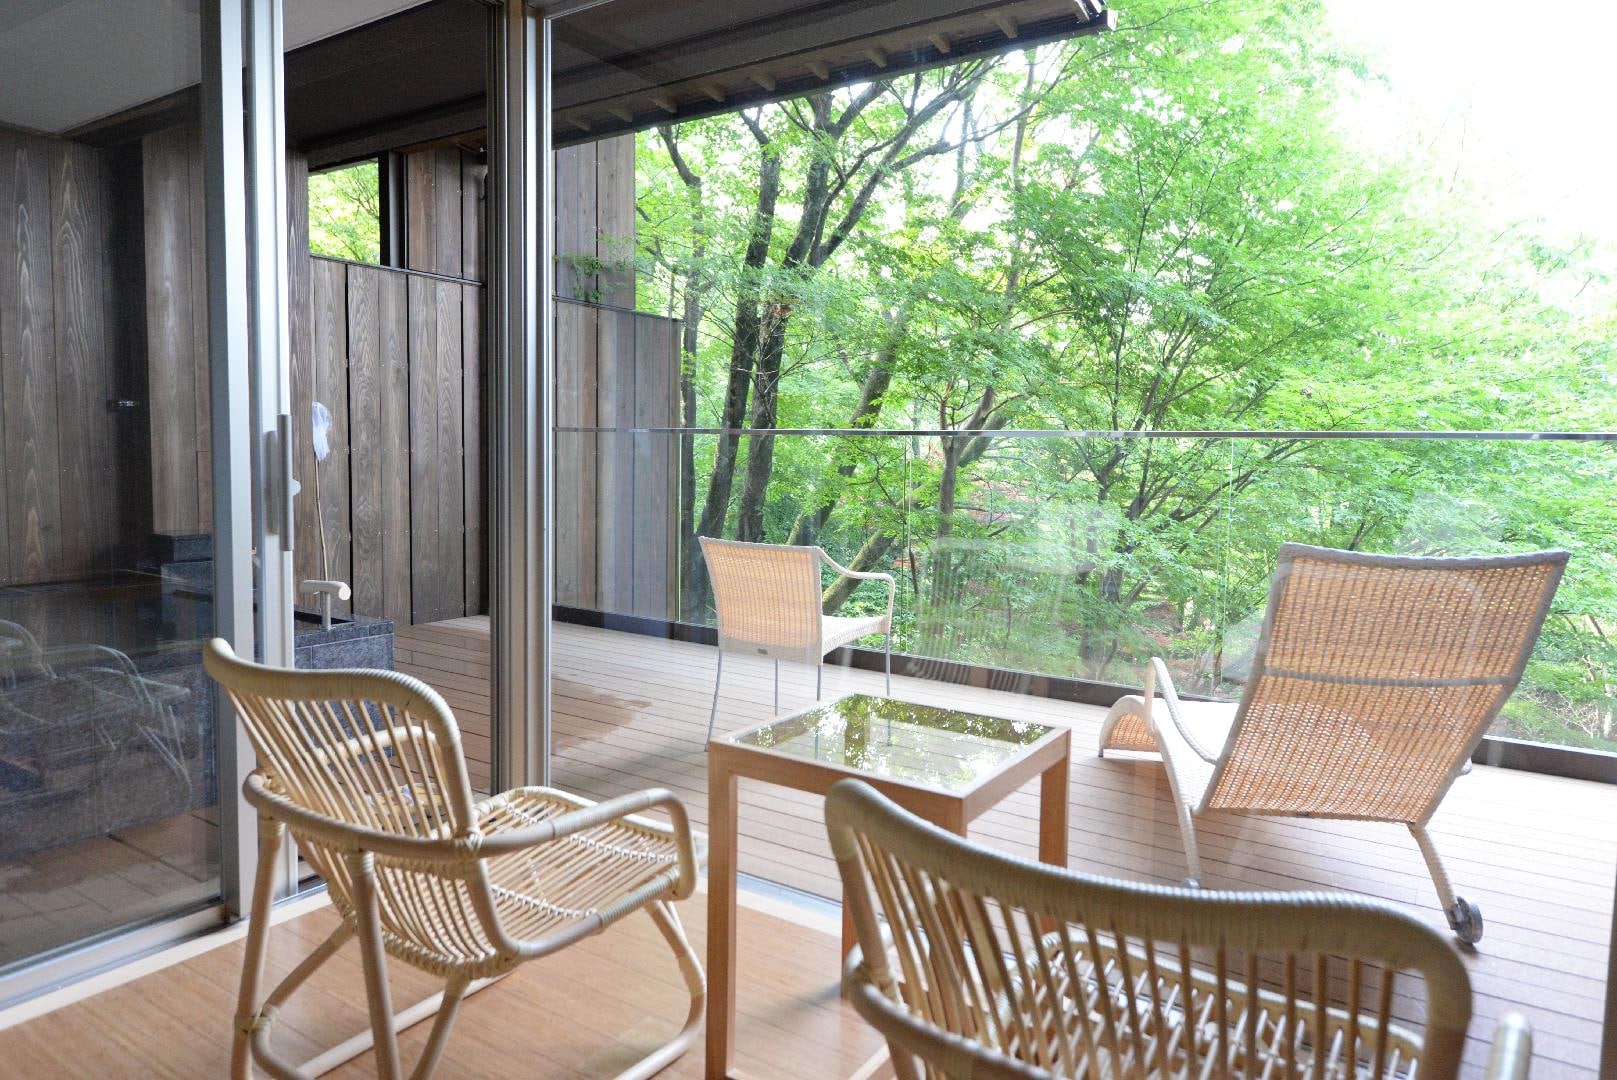 日式房間10張榻榻米寬邊+自然花園觀景台